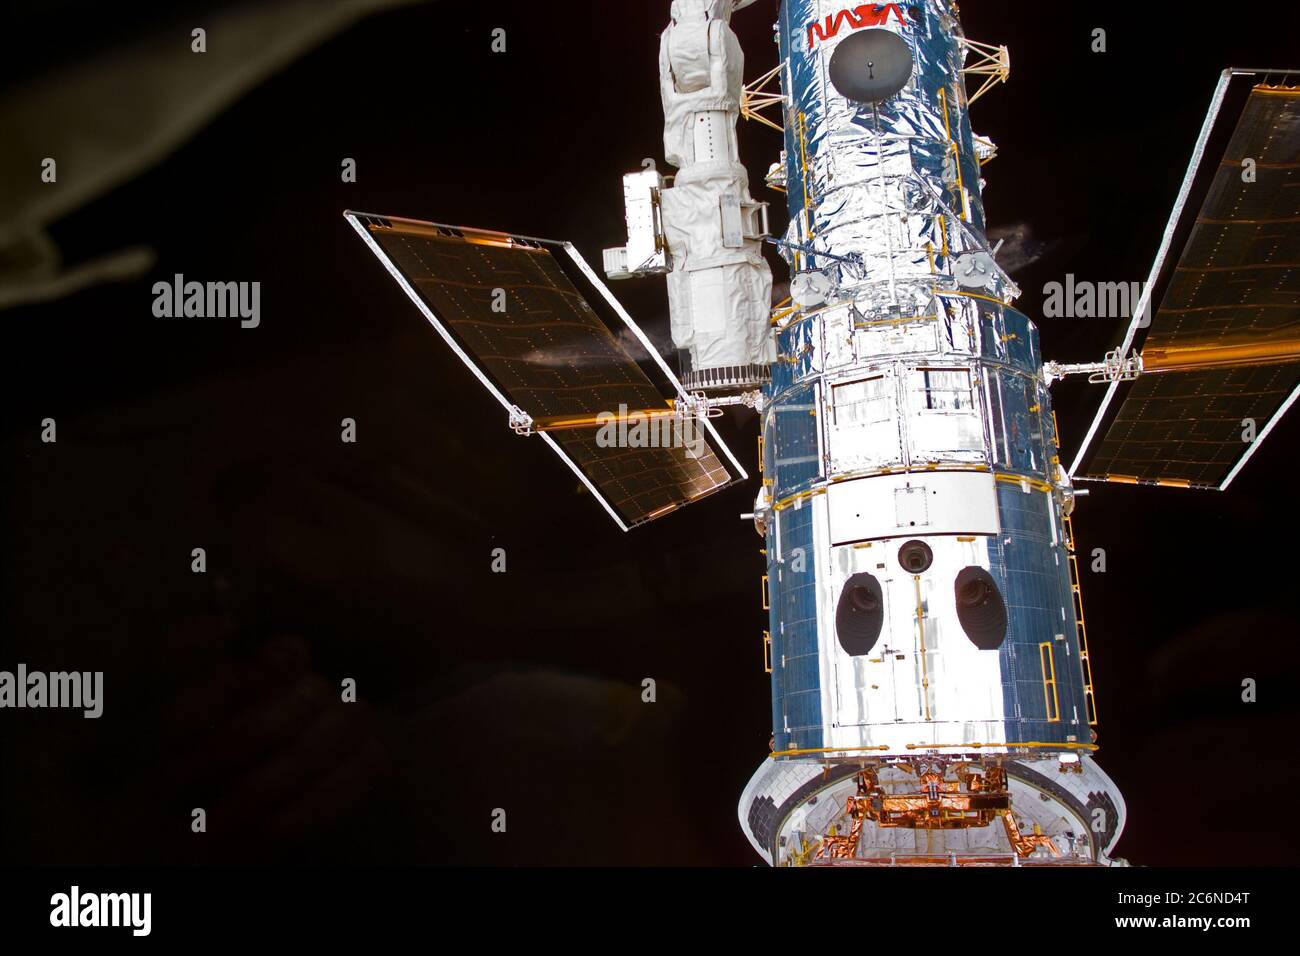 (13 febbraio 1997) --- telescopio spaziale Hubble (HST) dopo la cattura ormeggiato sul sistema di supporto di volo (FSS) nel vano di carico utile di Space Shuttle Discovery. Questa vista è stata ripresa con una fotocamera digitale (ESC). Foto Stock